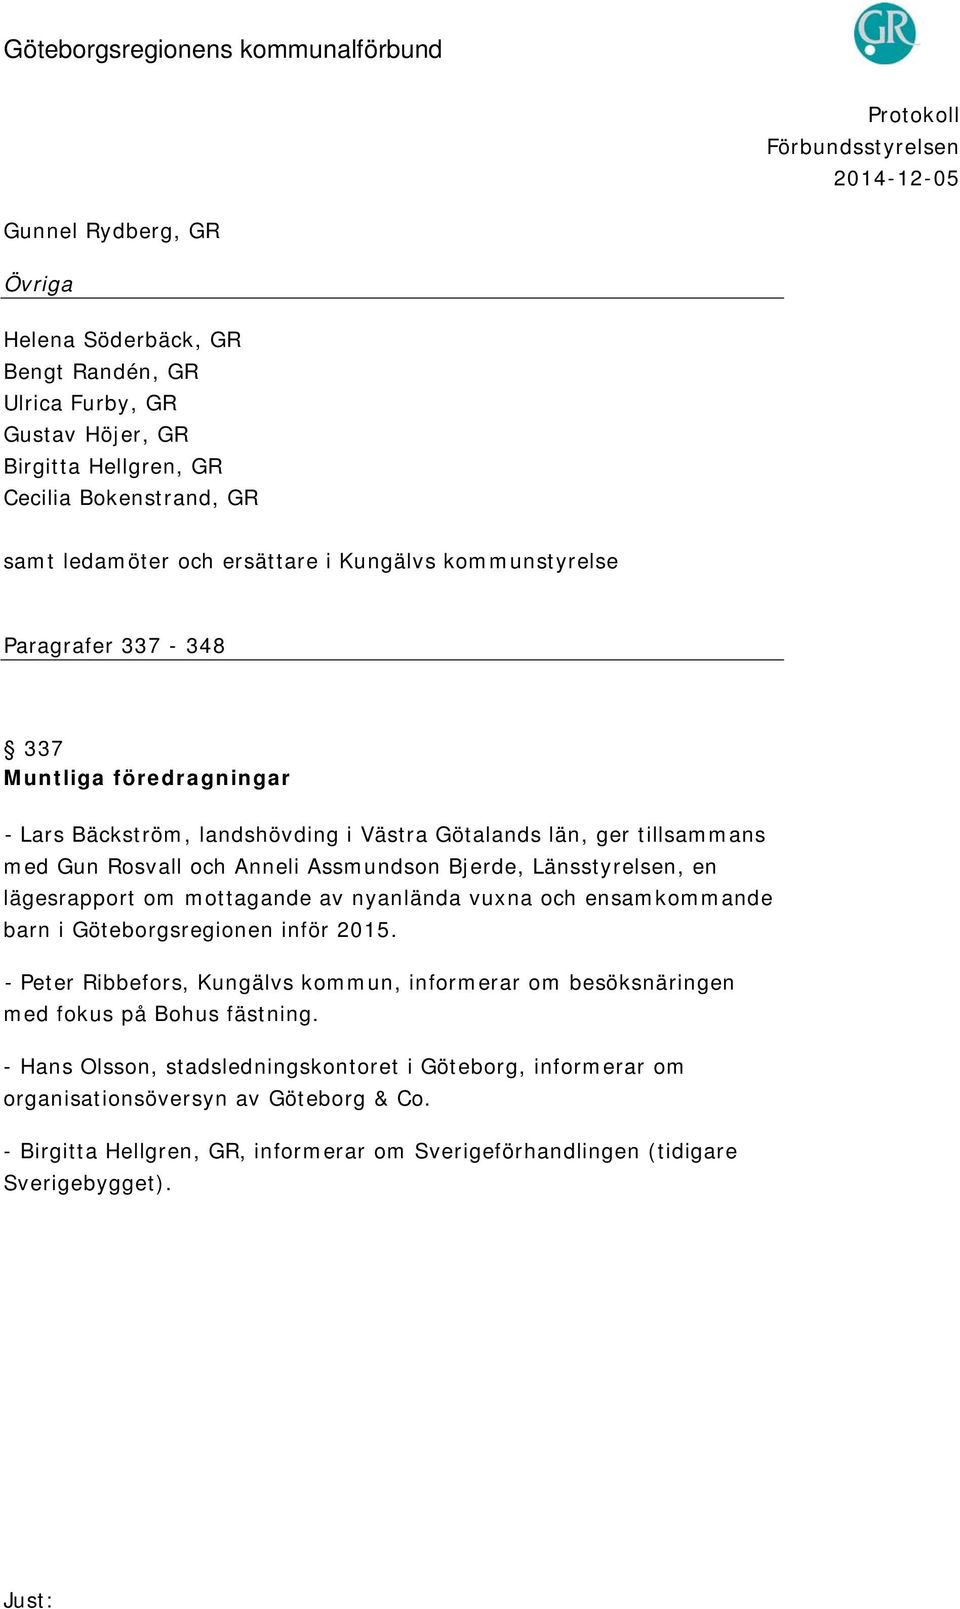 Länsstyrelsen, en lägesrapport om mottagande av nyanlända vuxna och ensamkommande barn i Göteborgsregionen inför 2015.